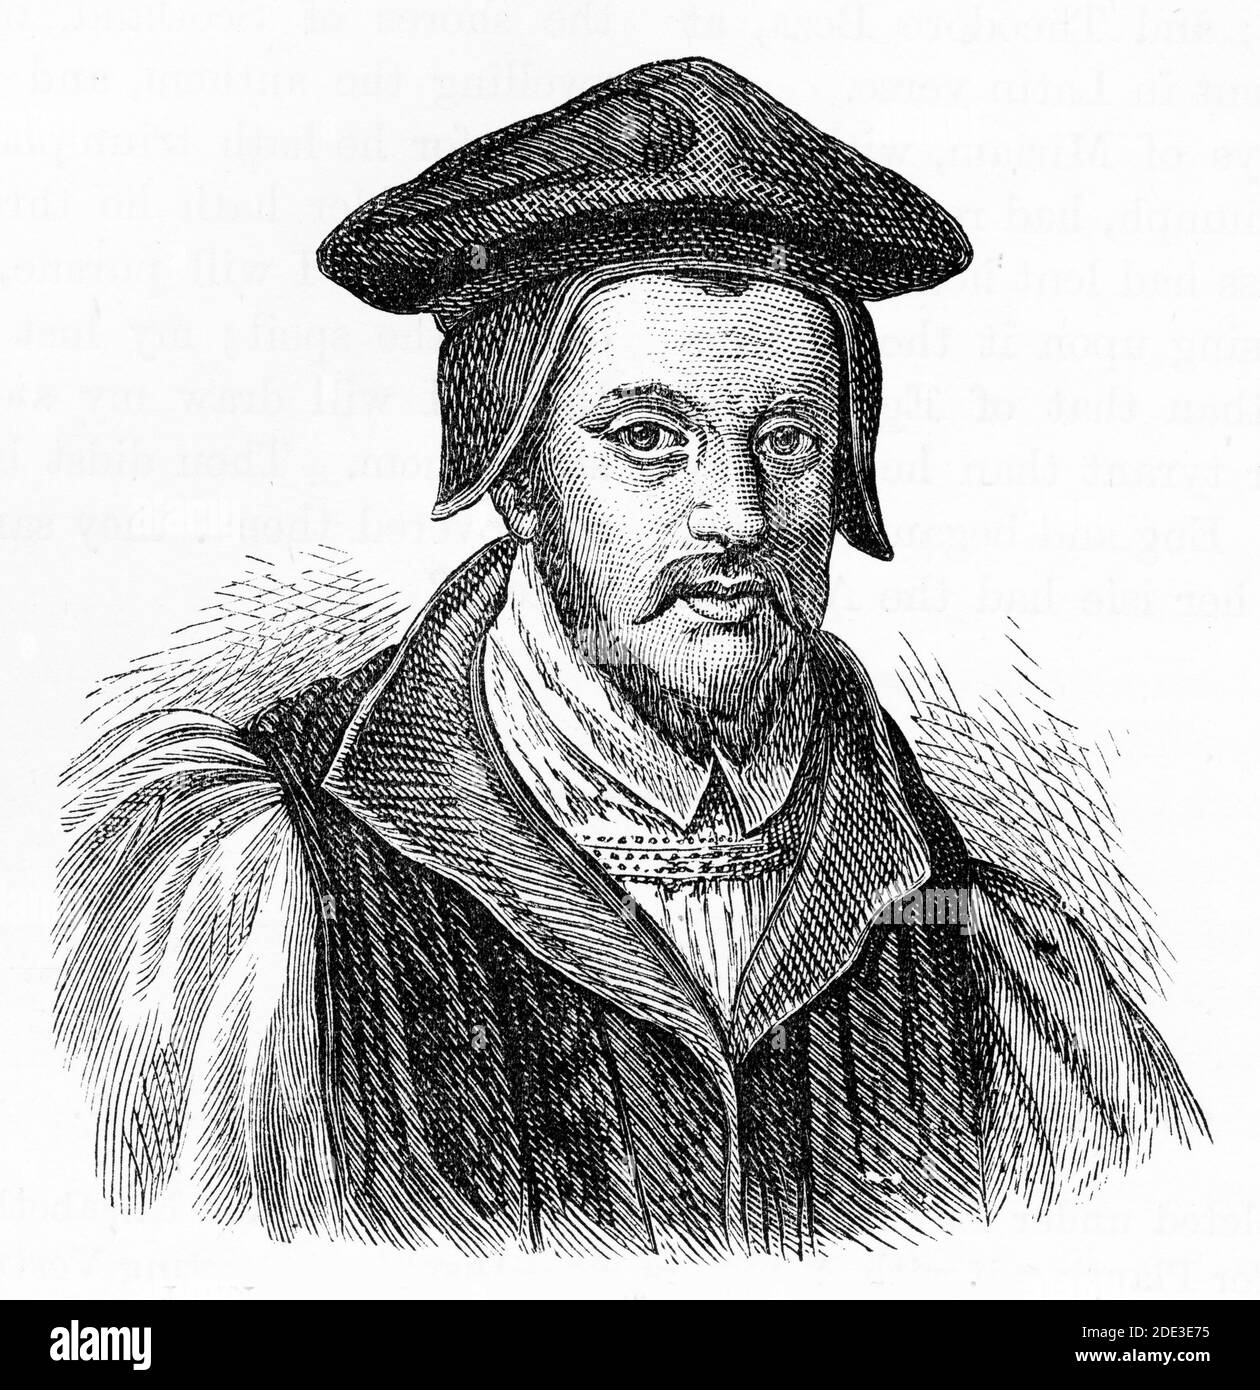 Stich von John Jewel (alias Jewell) (1522 – 1571) Bischof von Salisbury von 1559 bis 1571. Illustration aus "die Geschichte des Protestantismus" von James Aitken Wylie (1808-1890), Pub. 1878 Stockfoto